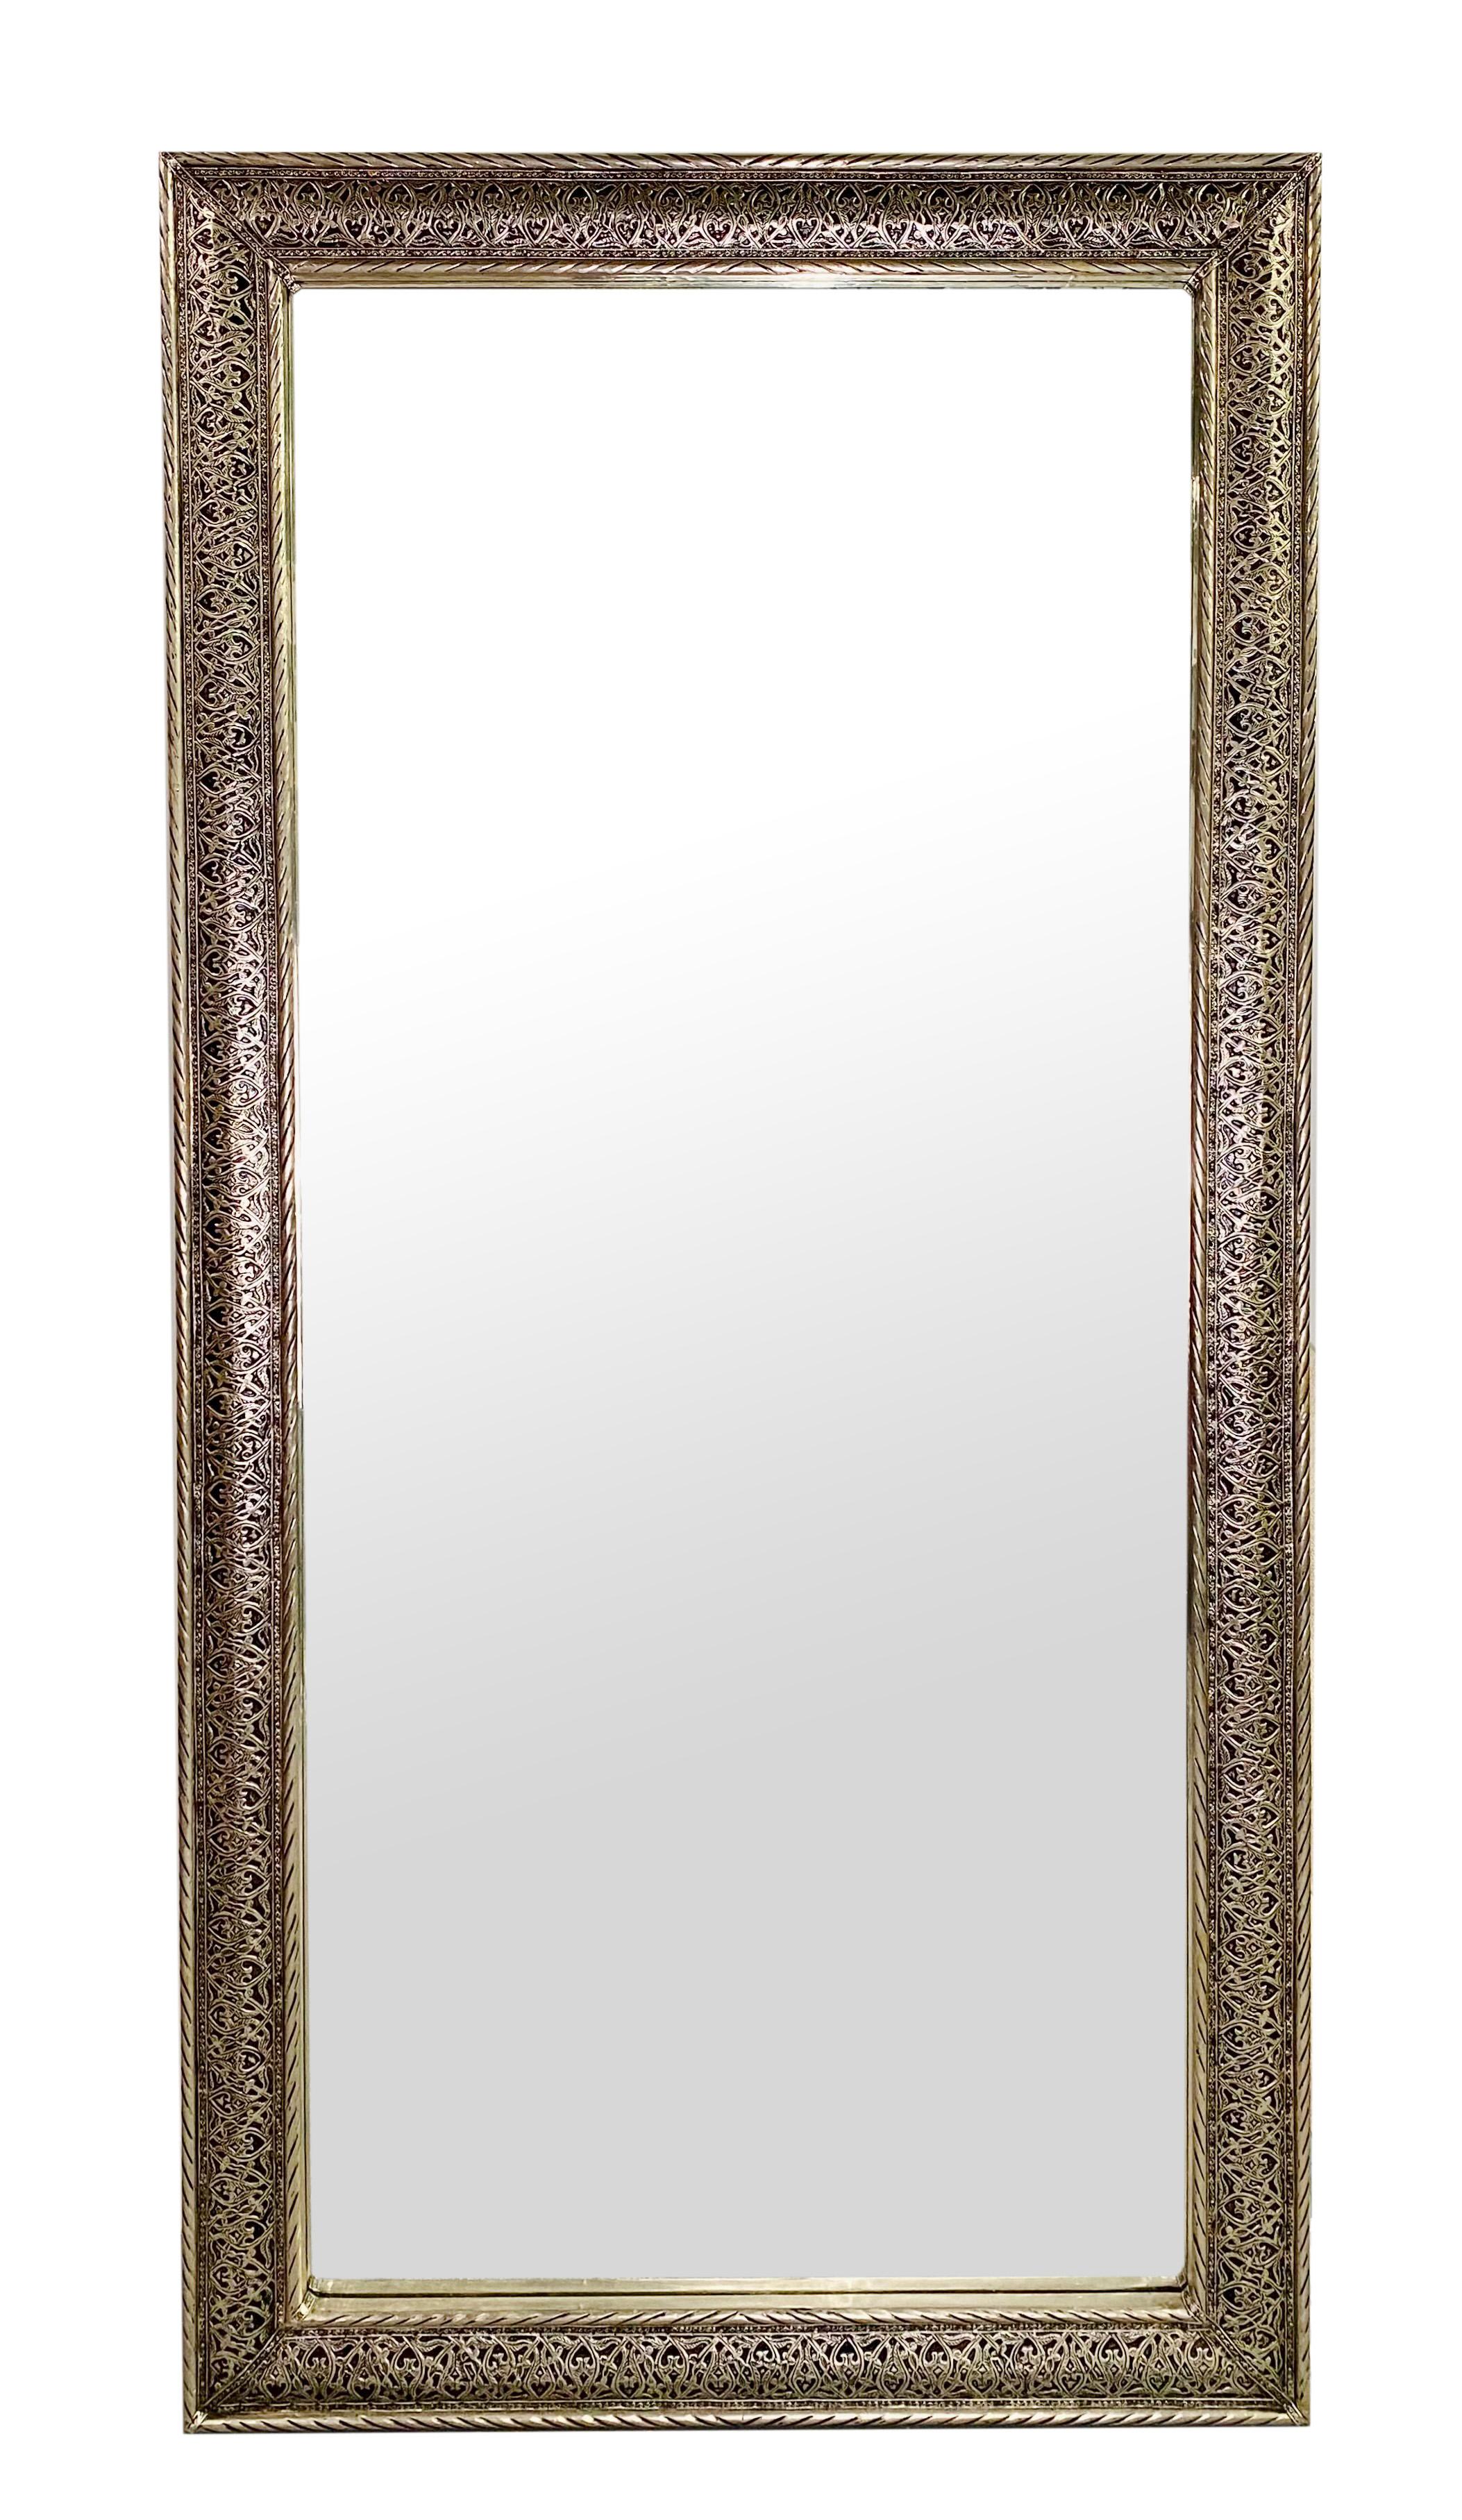 Ein Paar große Spiegel im Hollywood-Regency-Stil. Der Rahmen des Spiegels ist aus hochwertigem versilbertem Messing in filigraner Handarbeit gefertigt. Die Spiegel können als Wand- und Bodenspiegel sowohl horizontal als auch vertikal aufgestellt